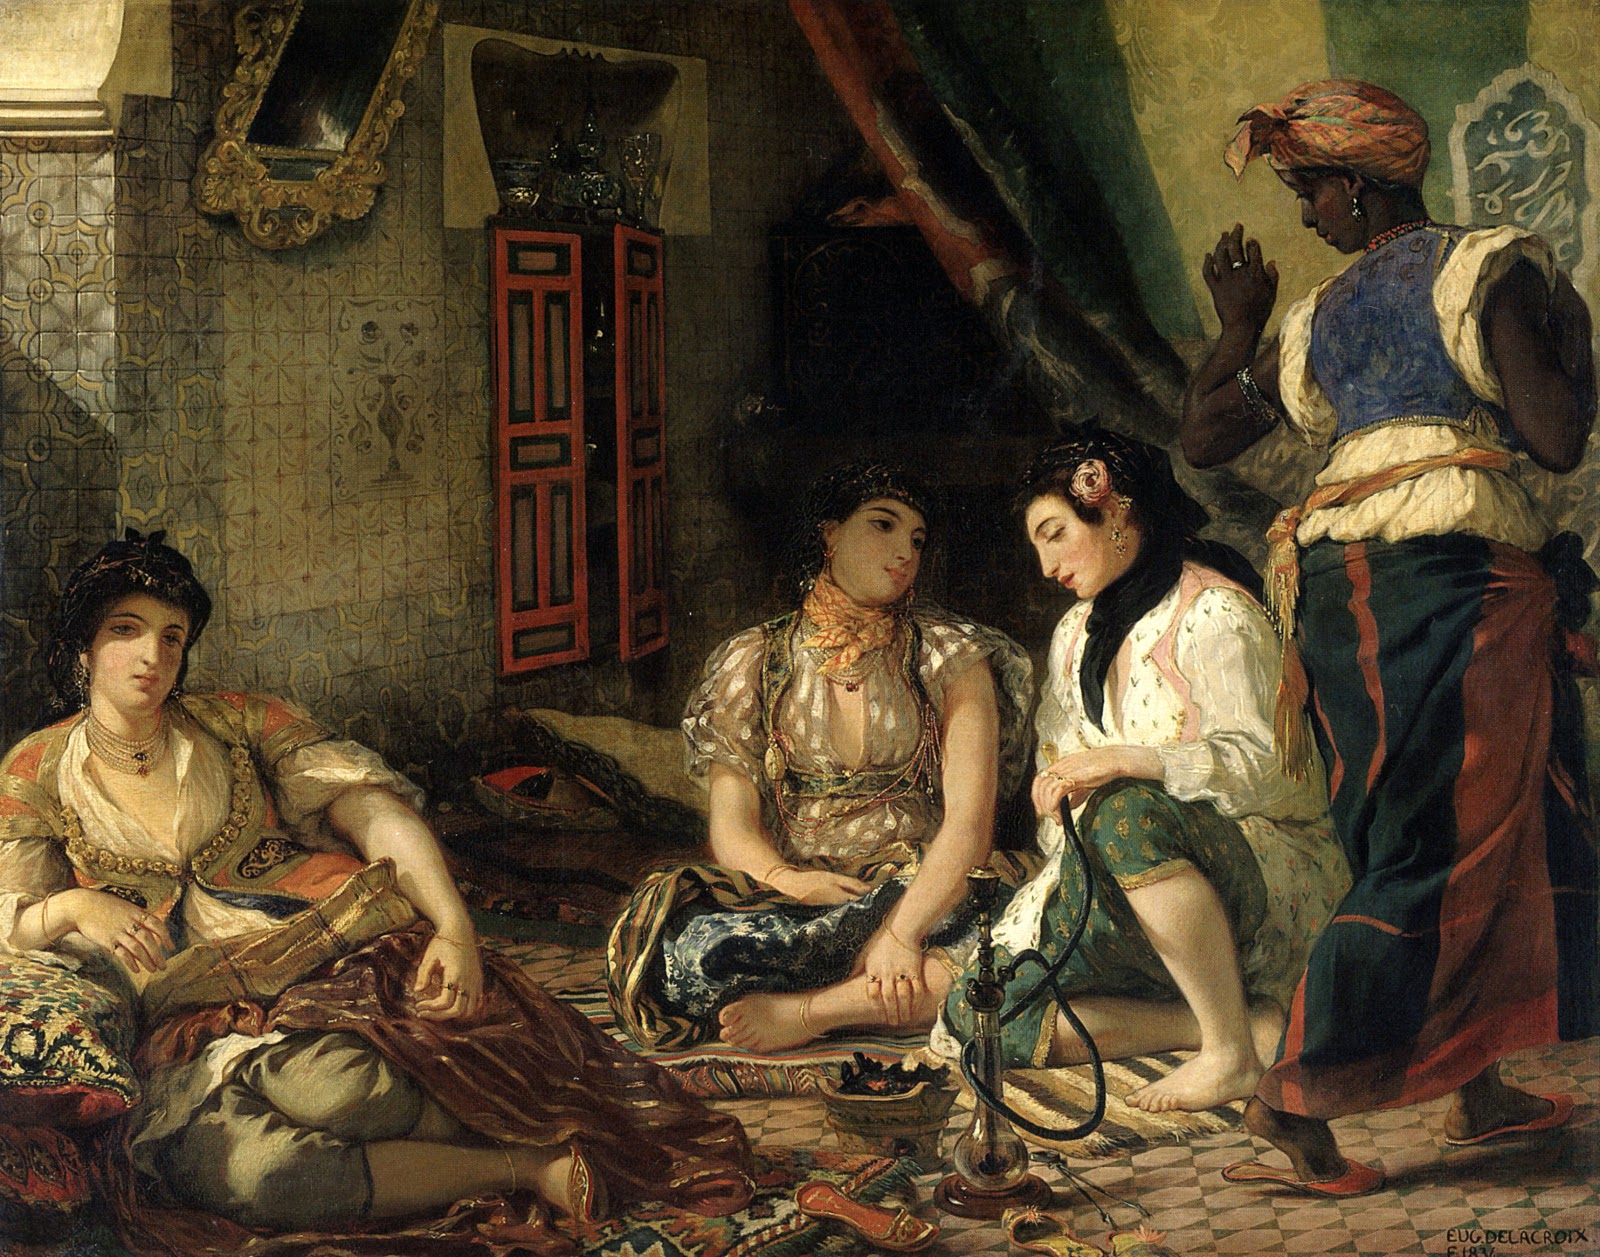 Eugene+Delacroix-1798-1863 (296).jpg